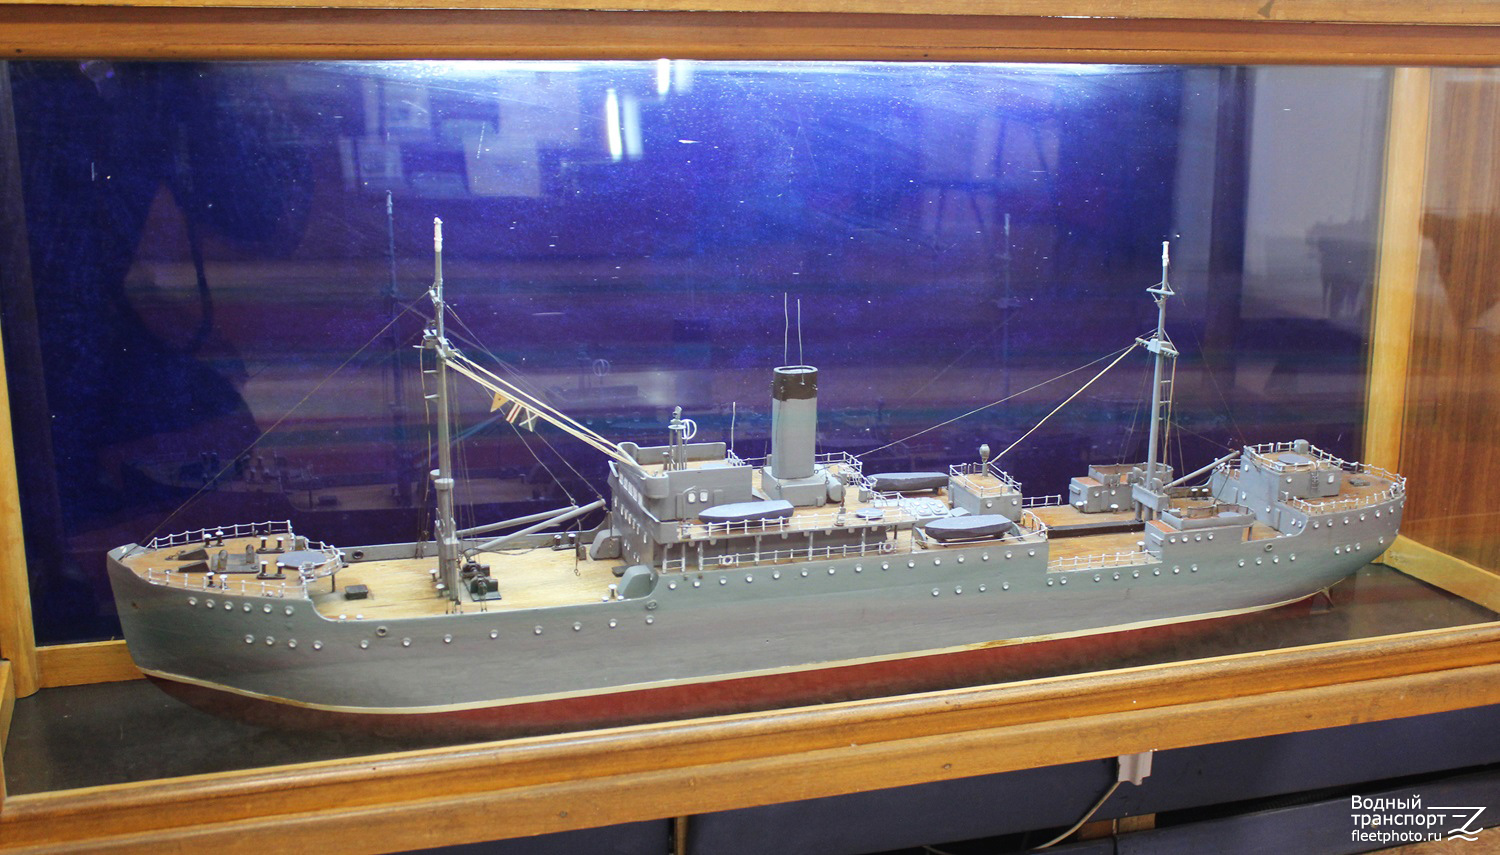 Саратов. Модели боевых кораблей